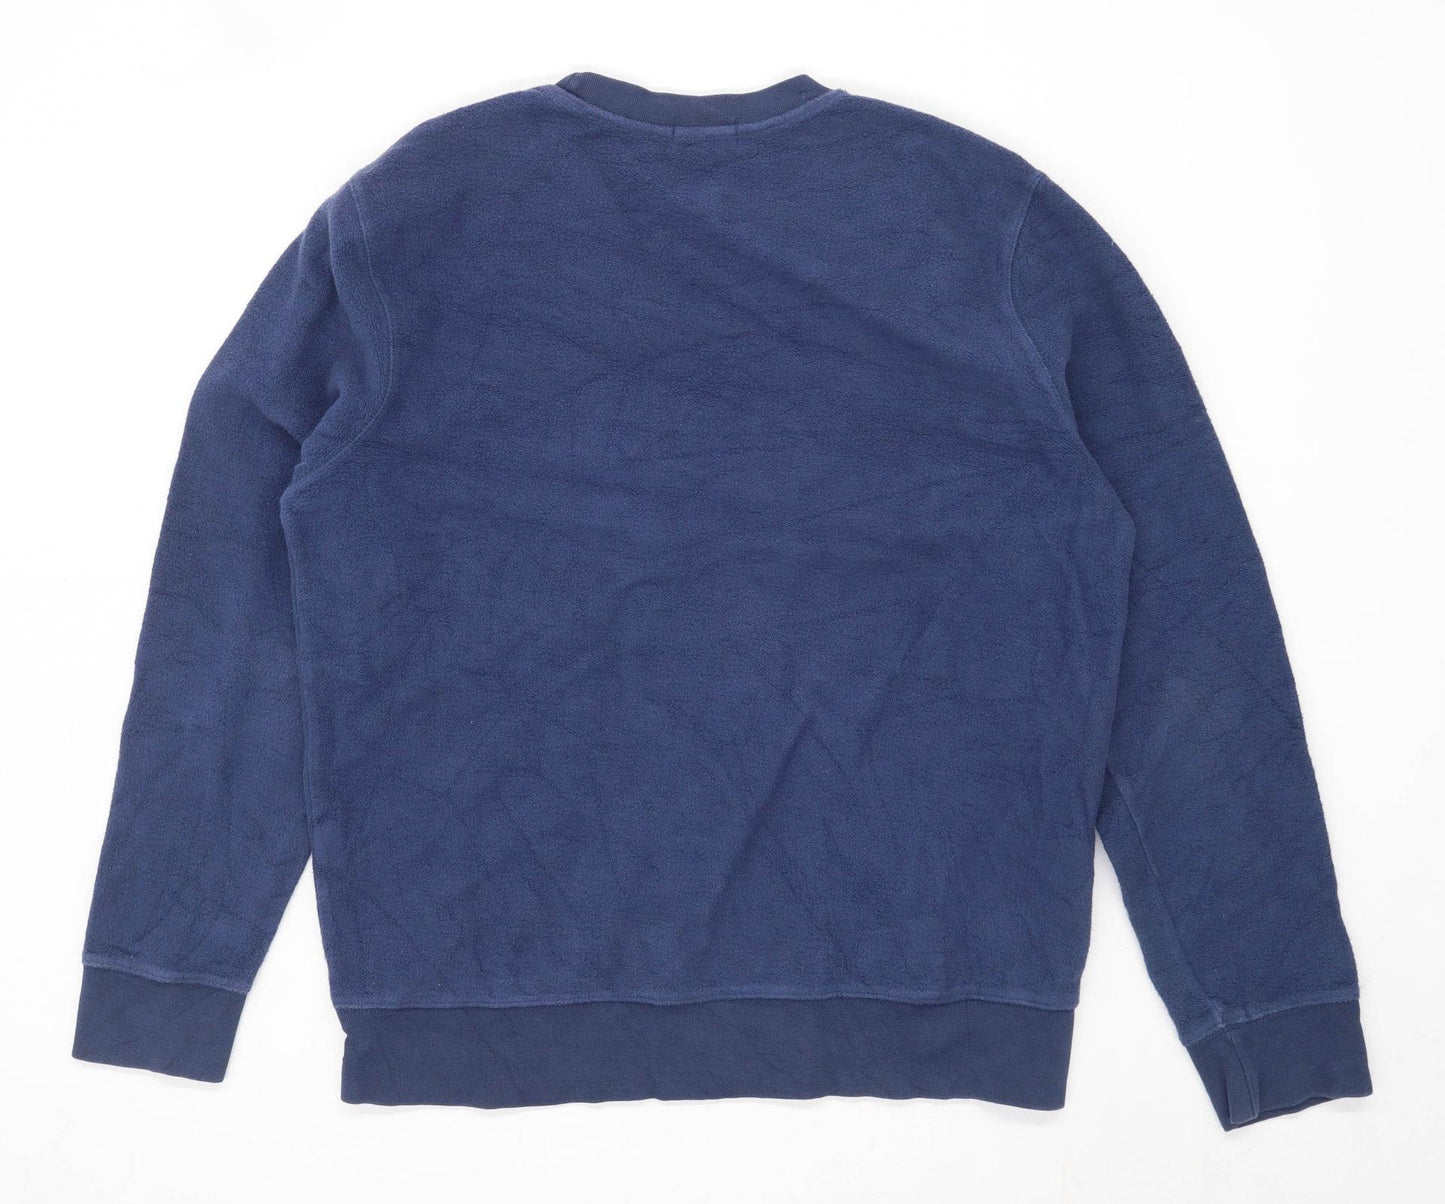 Topman Mens Size M Cotton Blend Blue Sweatshirt